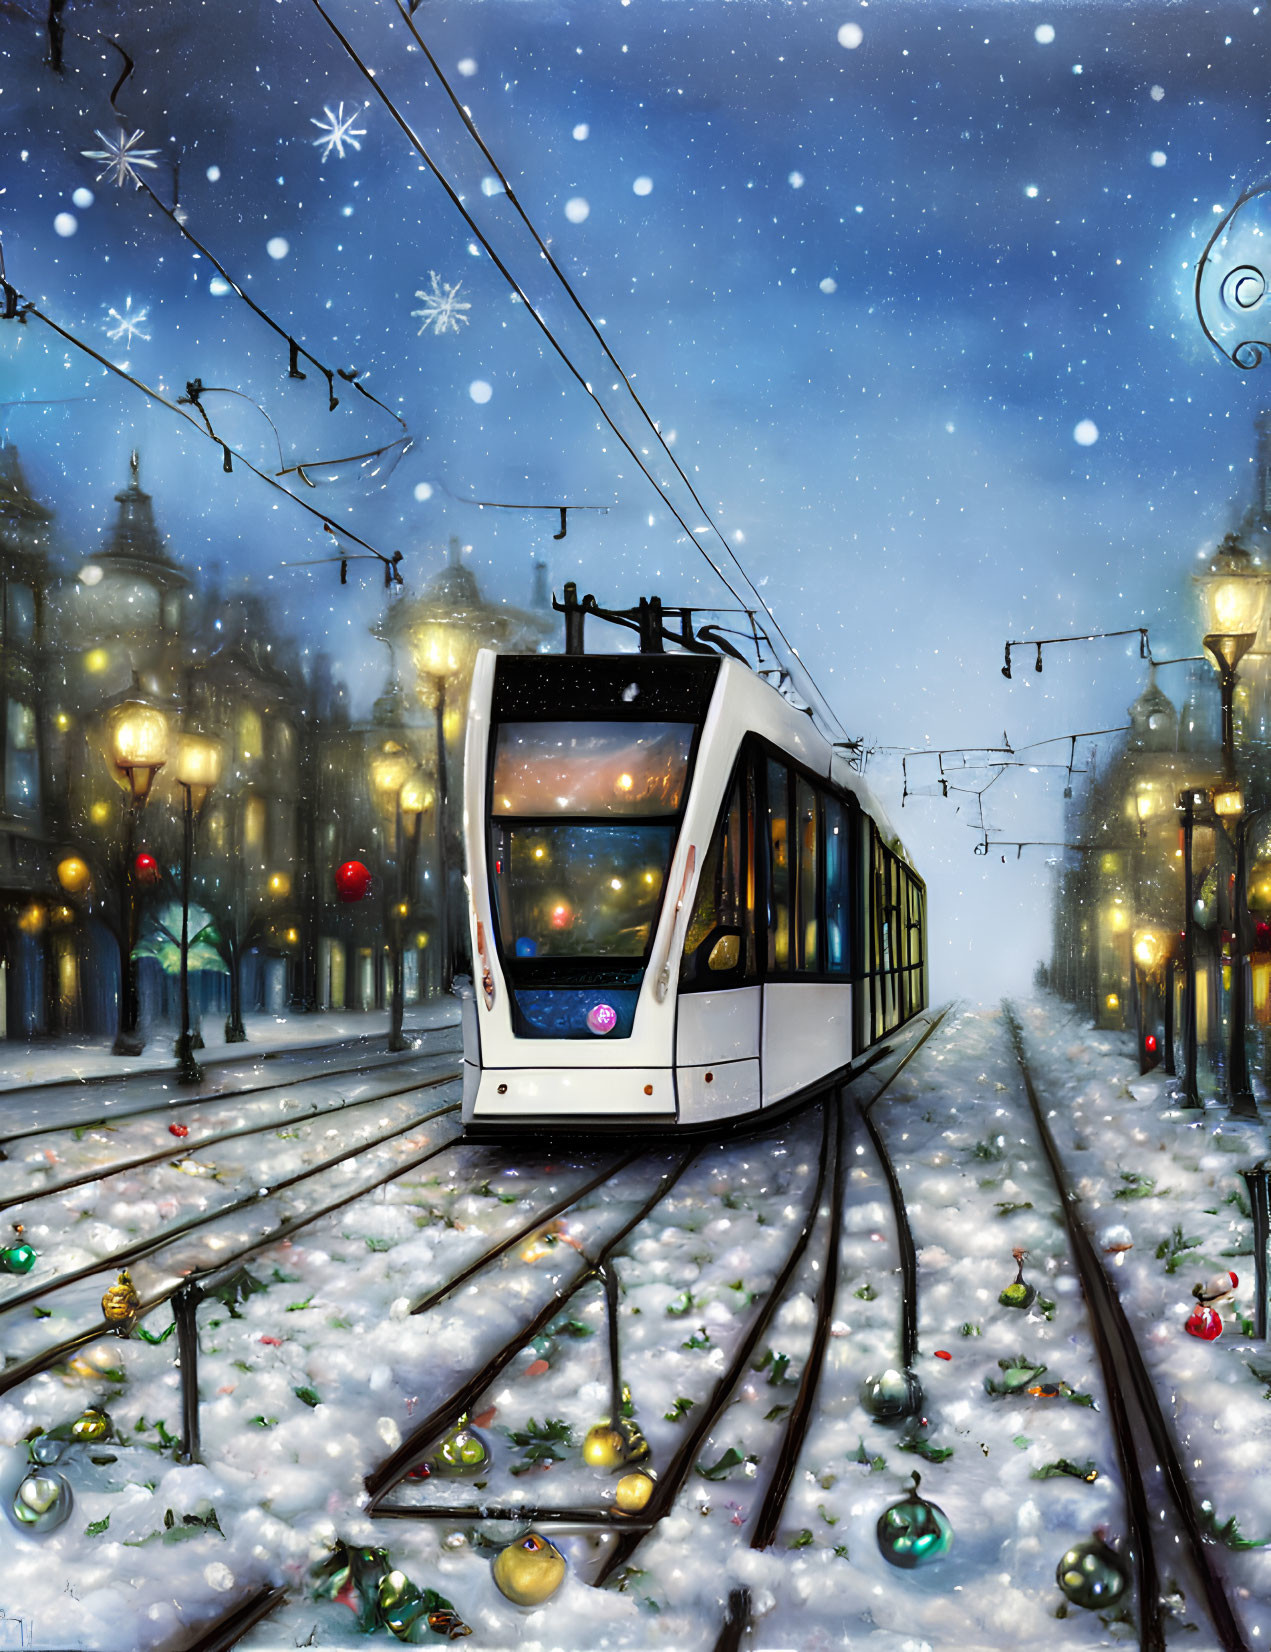 Modern tram in snowy winter scene with festive ornaments